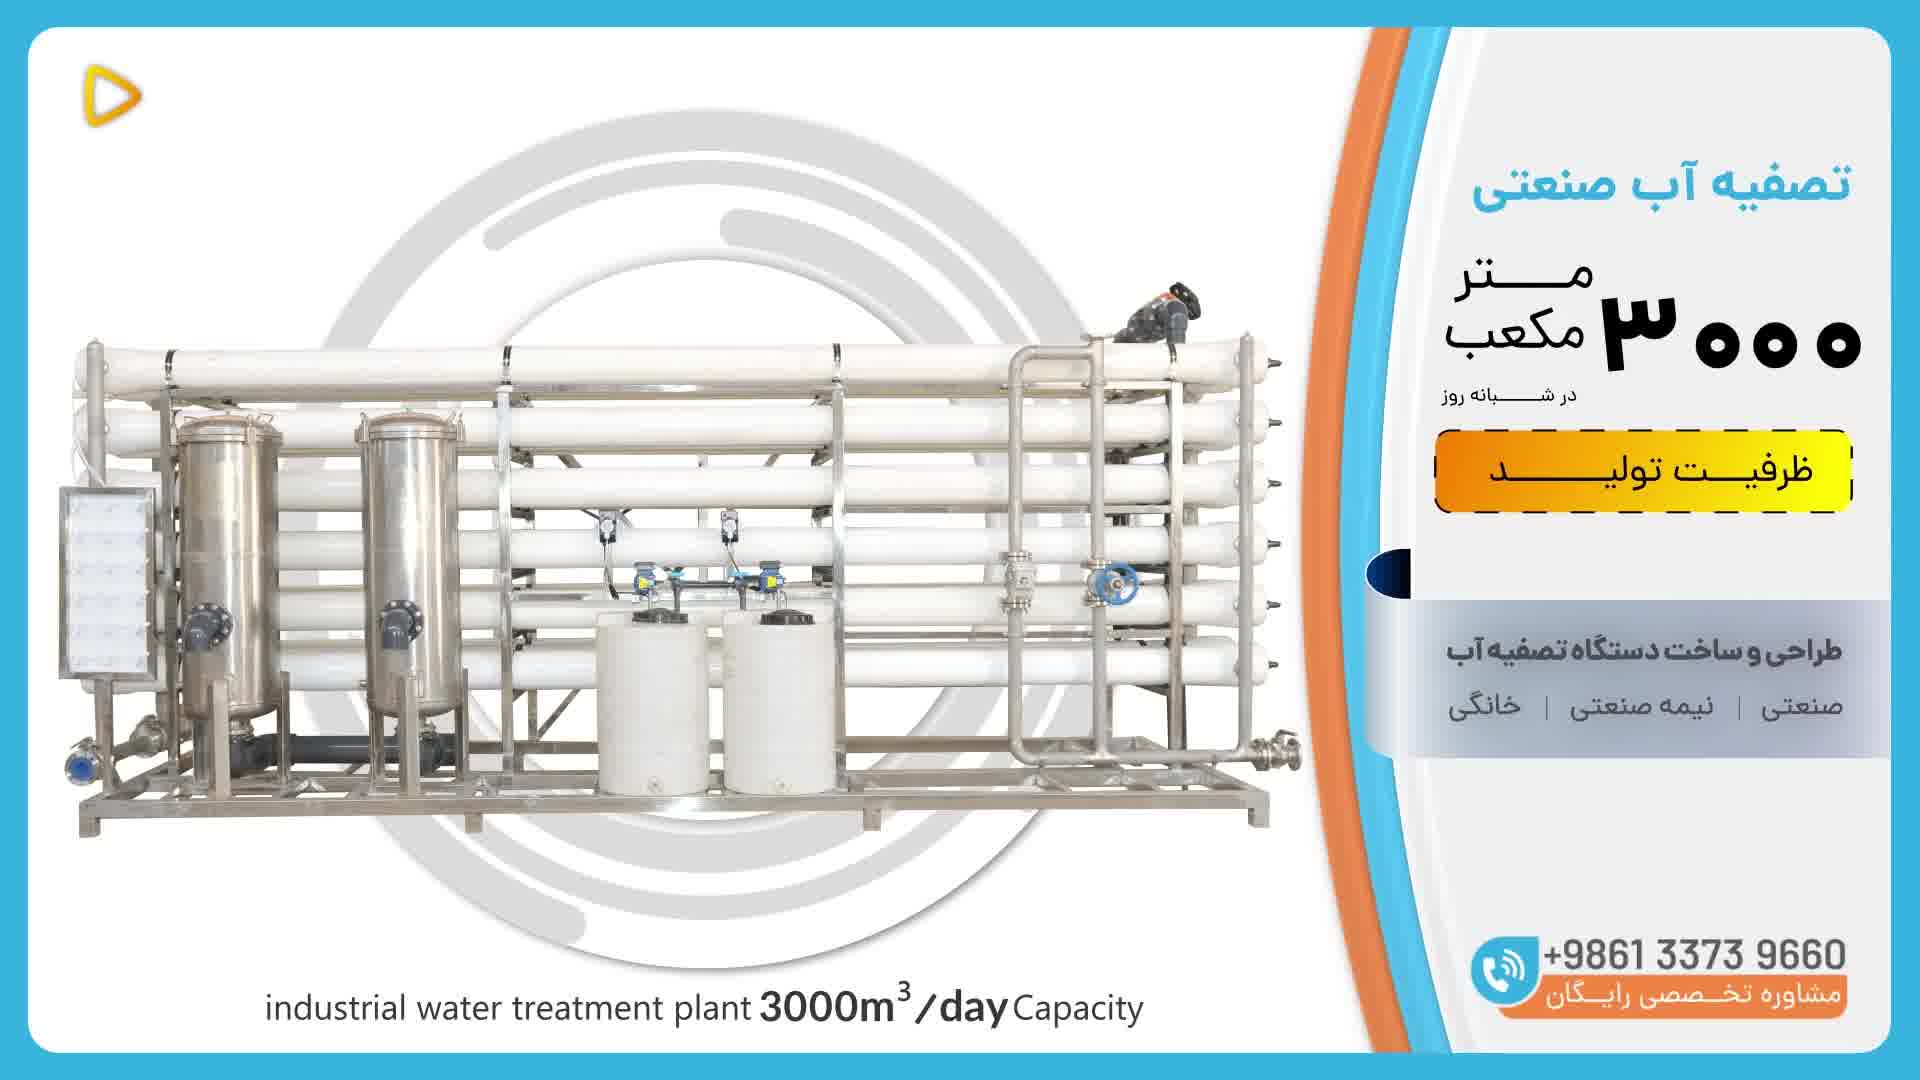 قیمت دستگاه تصفیه آب صنعتی ظرفیت 3000 متر مکعب در شبانه روز